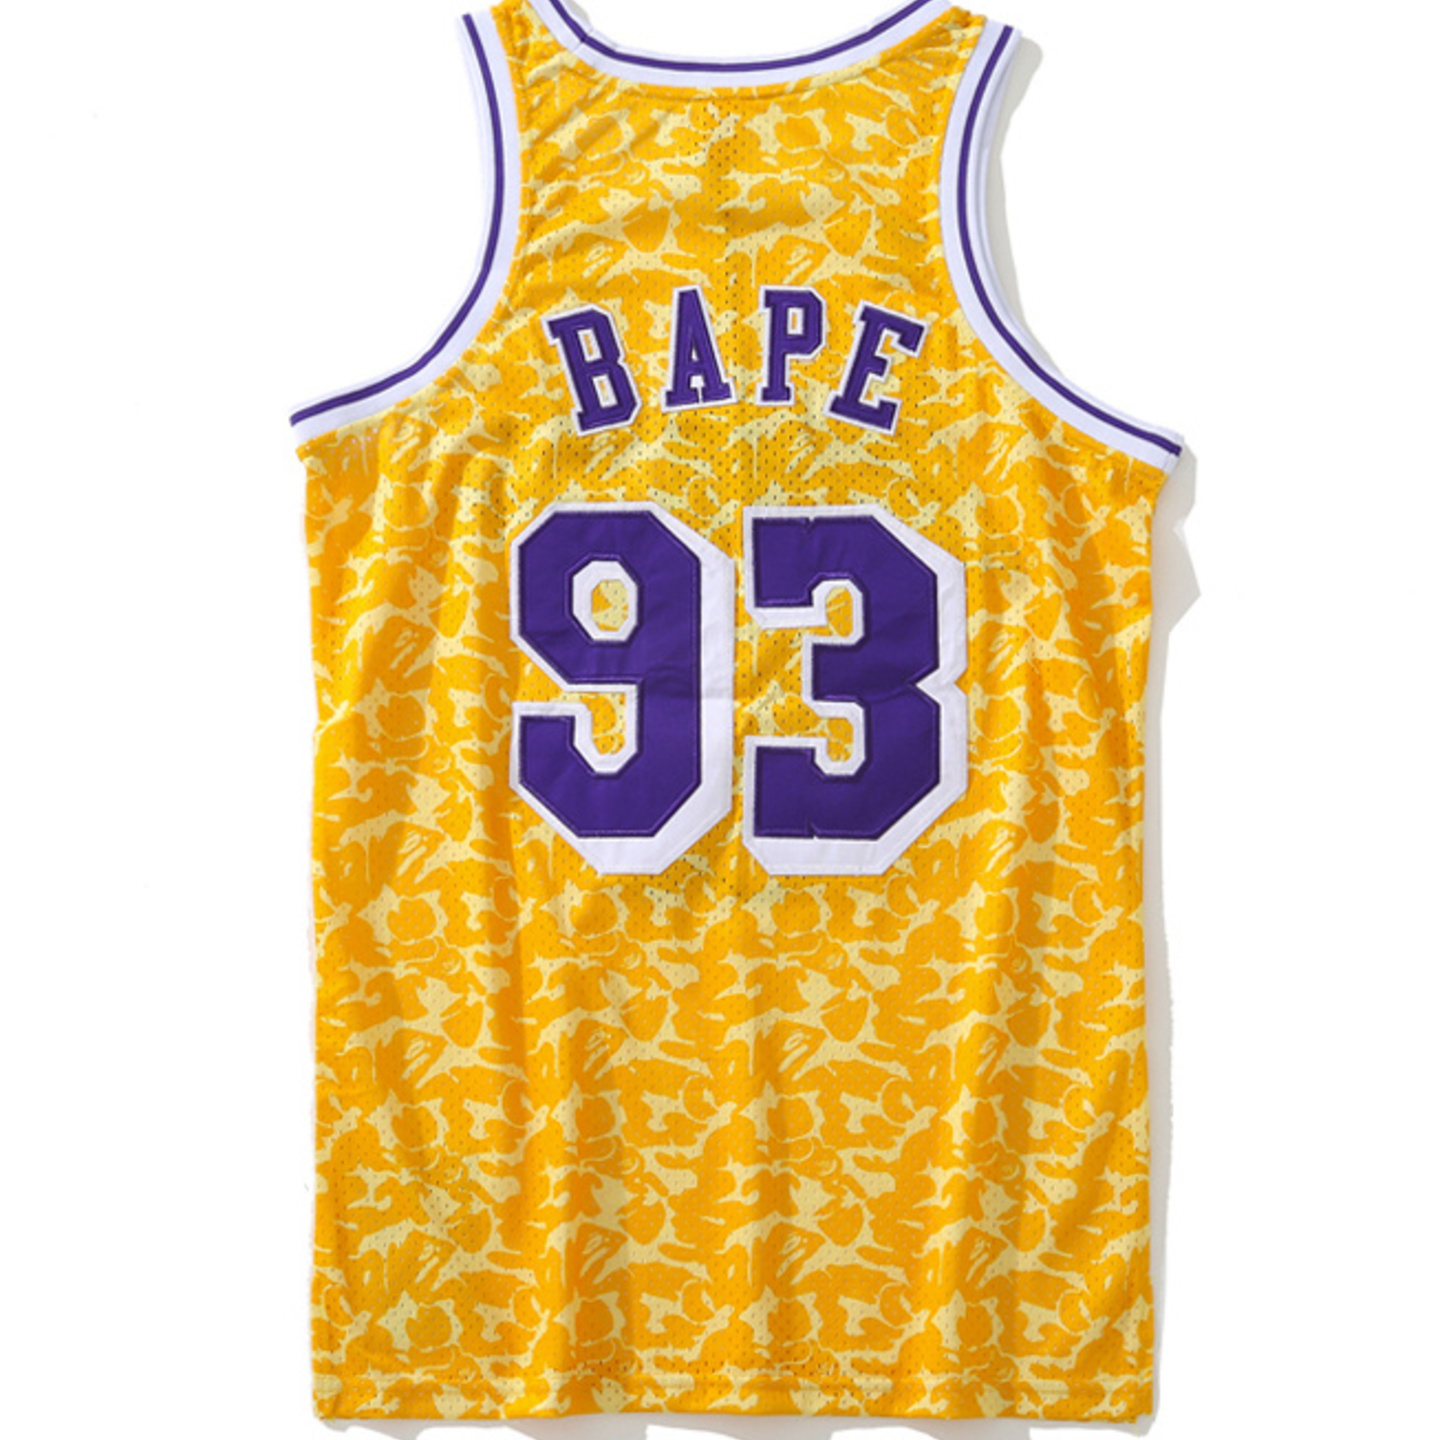 BAPE x Mitchell & Ness Lakers ABC Basketball Swingman Jersey